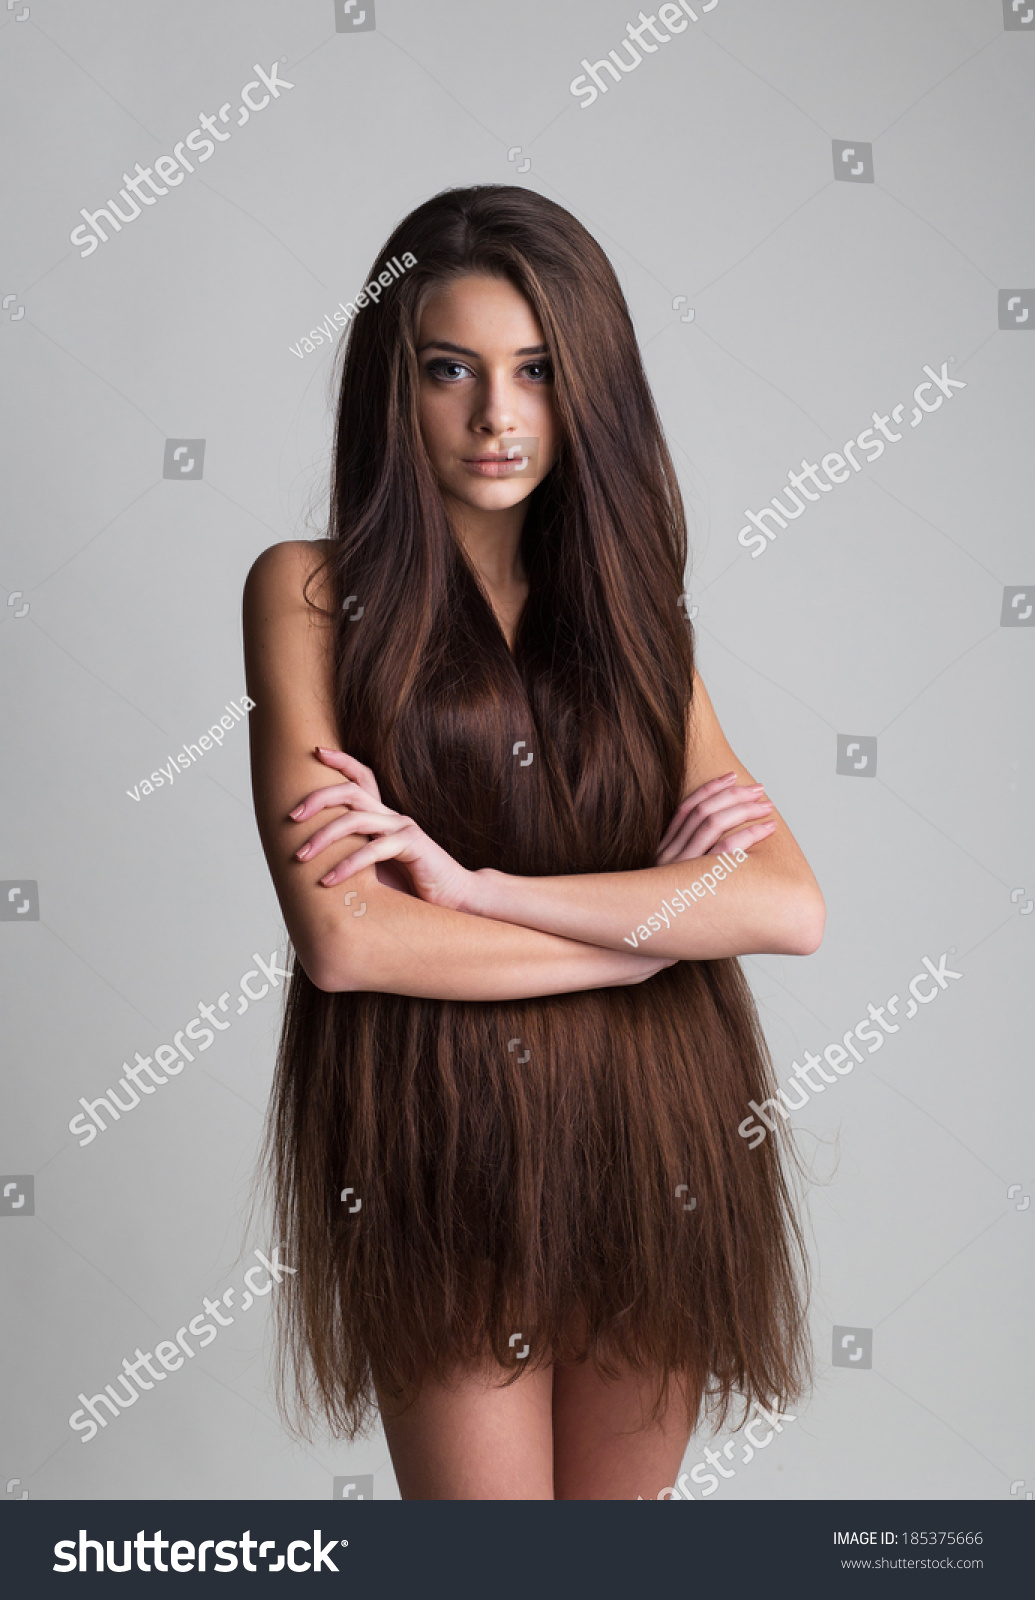 Teen Long Hair Naked Girl